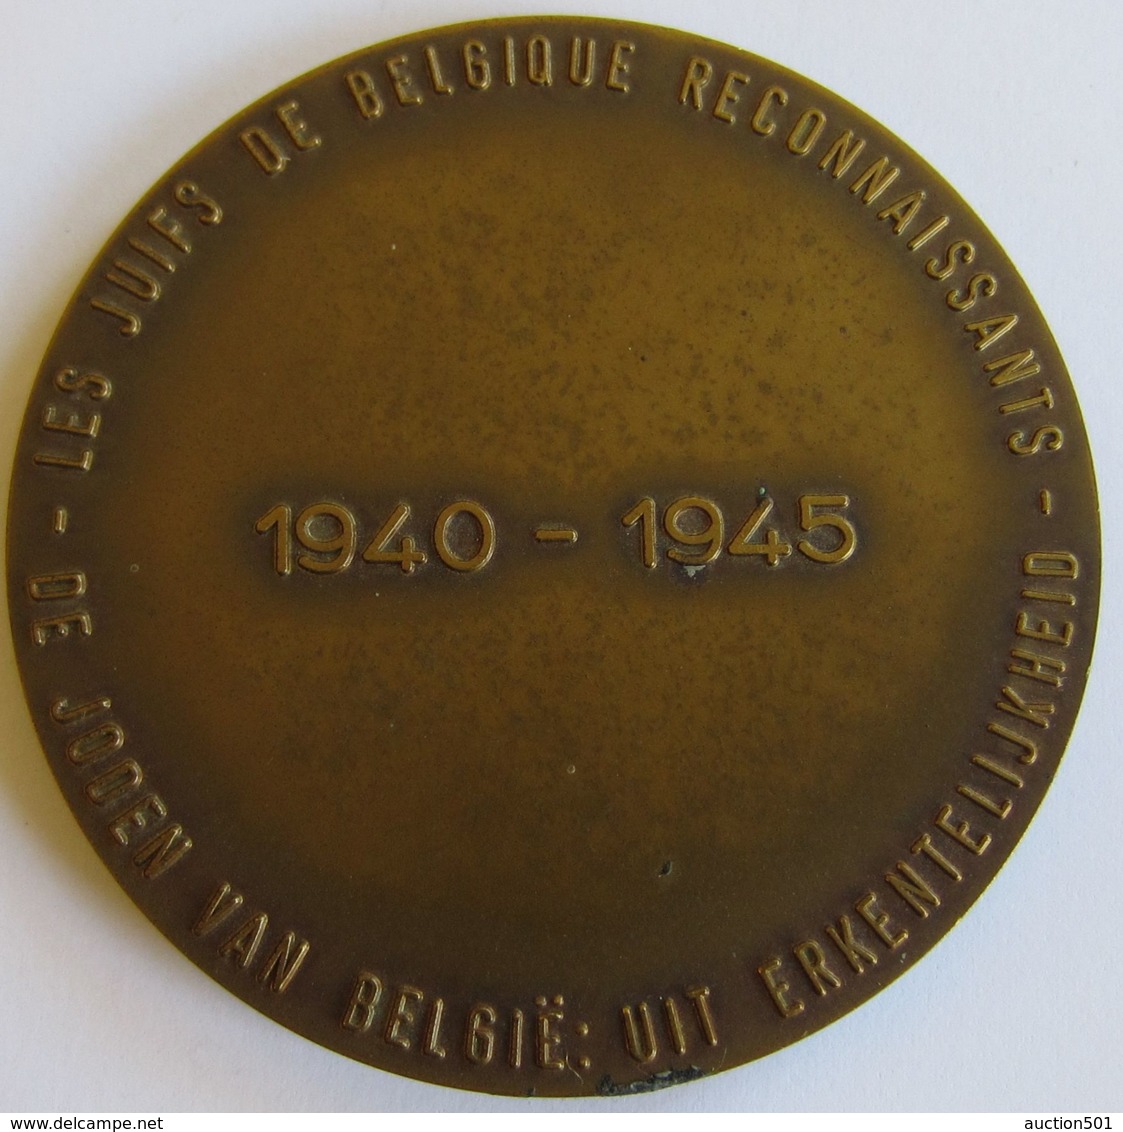 M02078  LES JUIFS DE BELGIQUE RECONNAISSANTS 1940-1945  (84 G) - Unternehmen